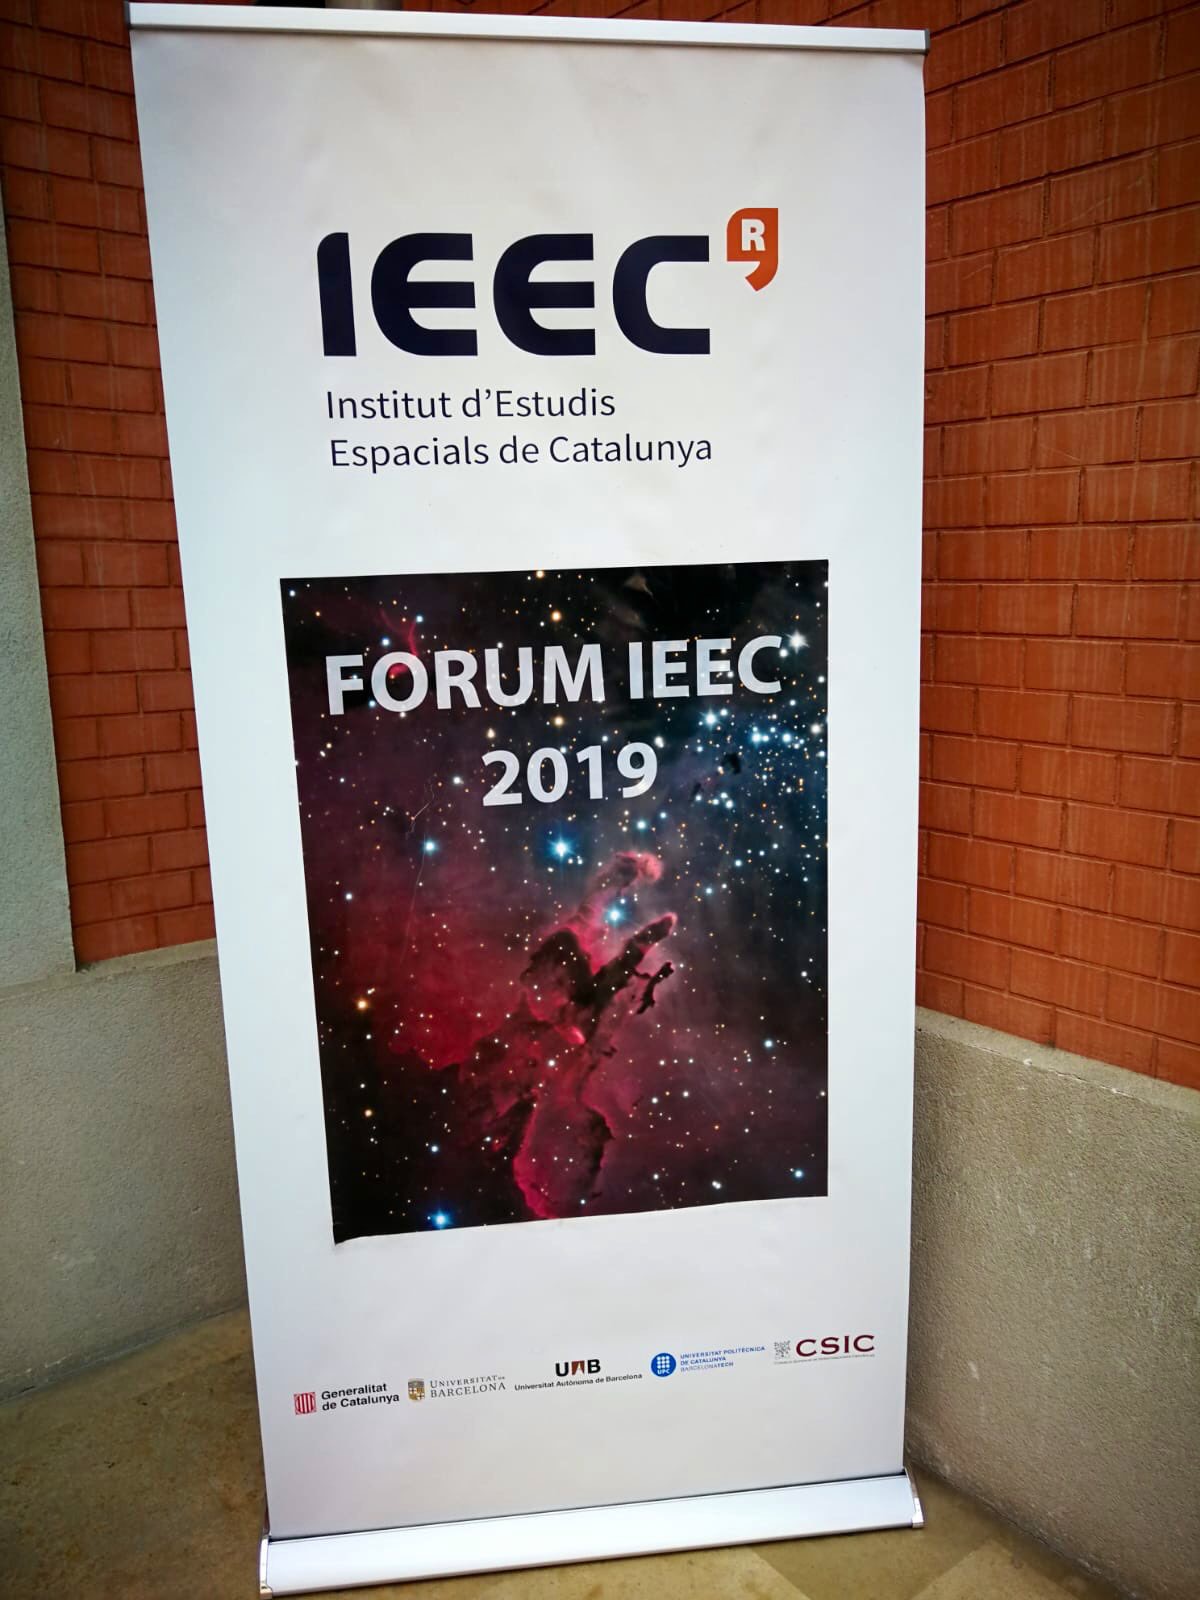 Forum IEEC 2019